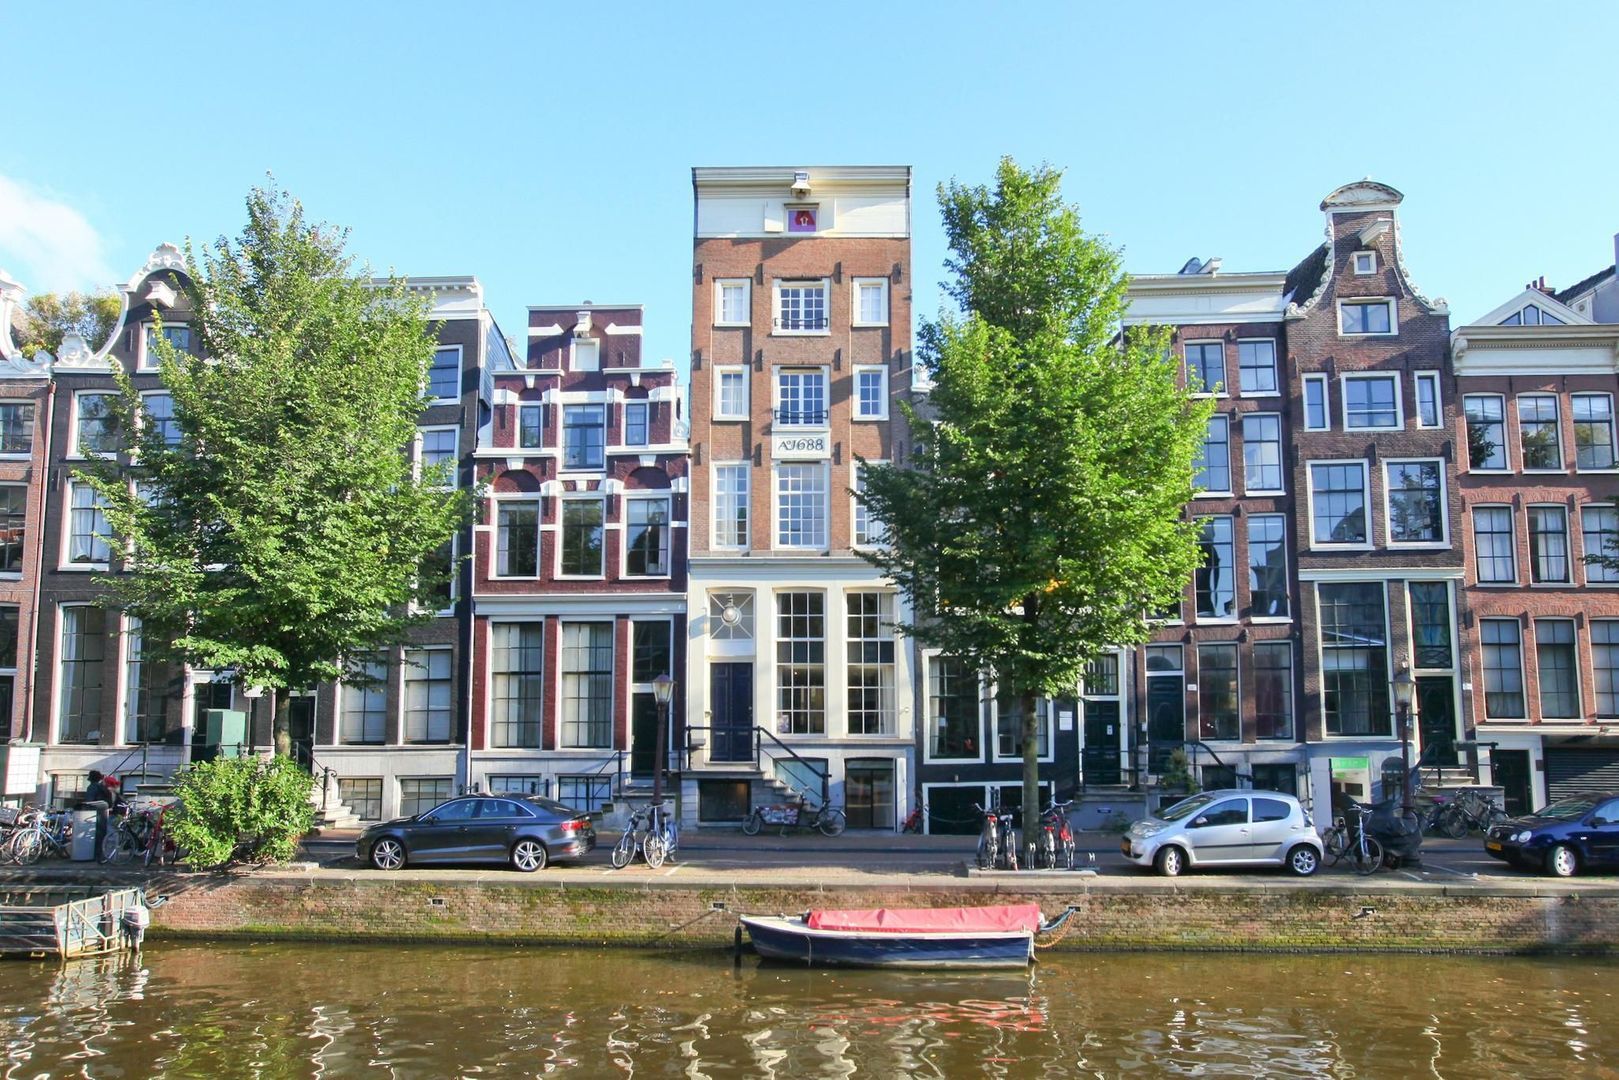 Bekijk foto 1/67 van apartment in Amsterdam